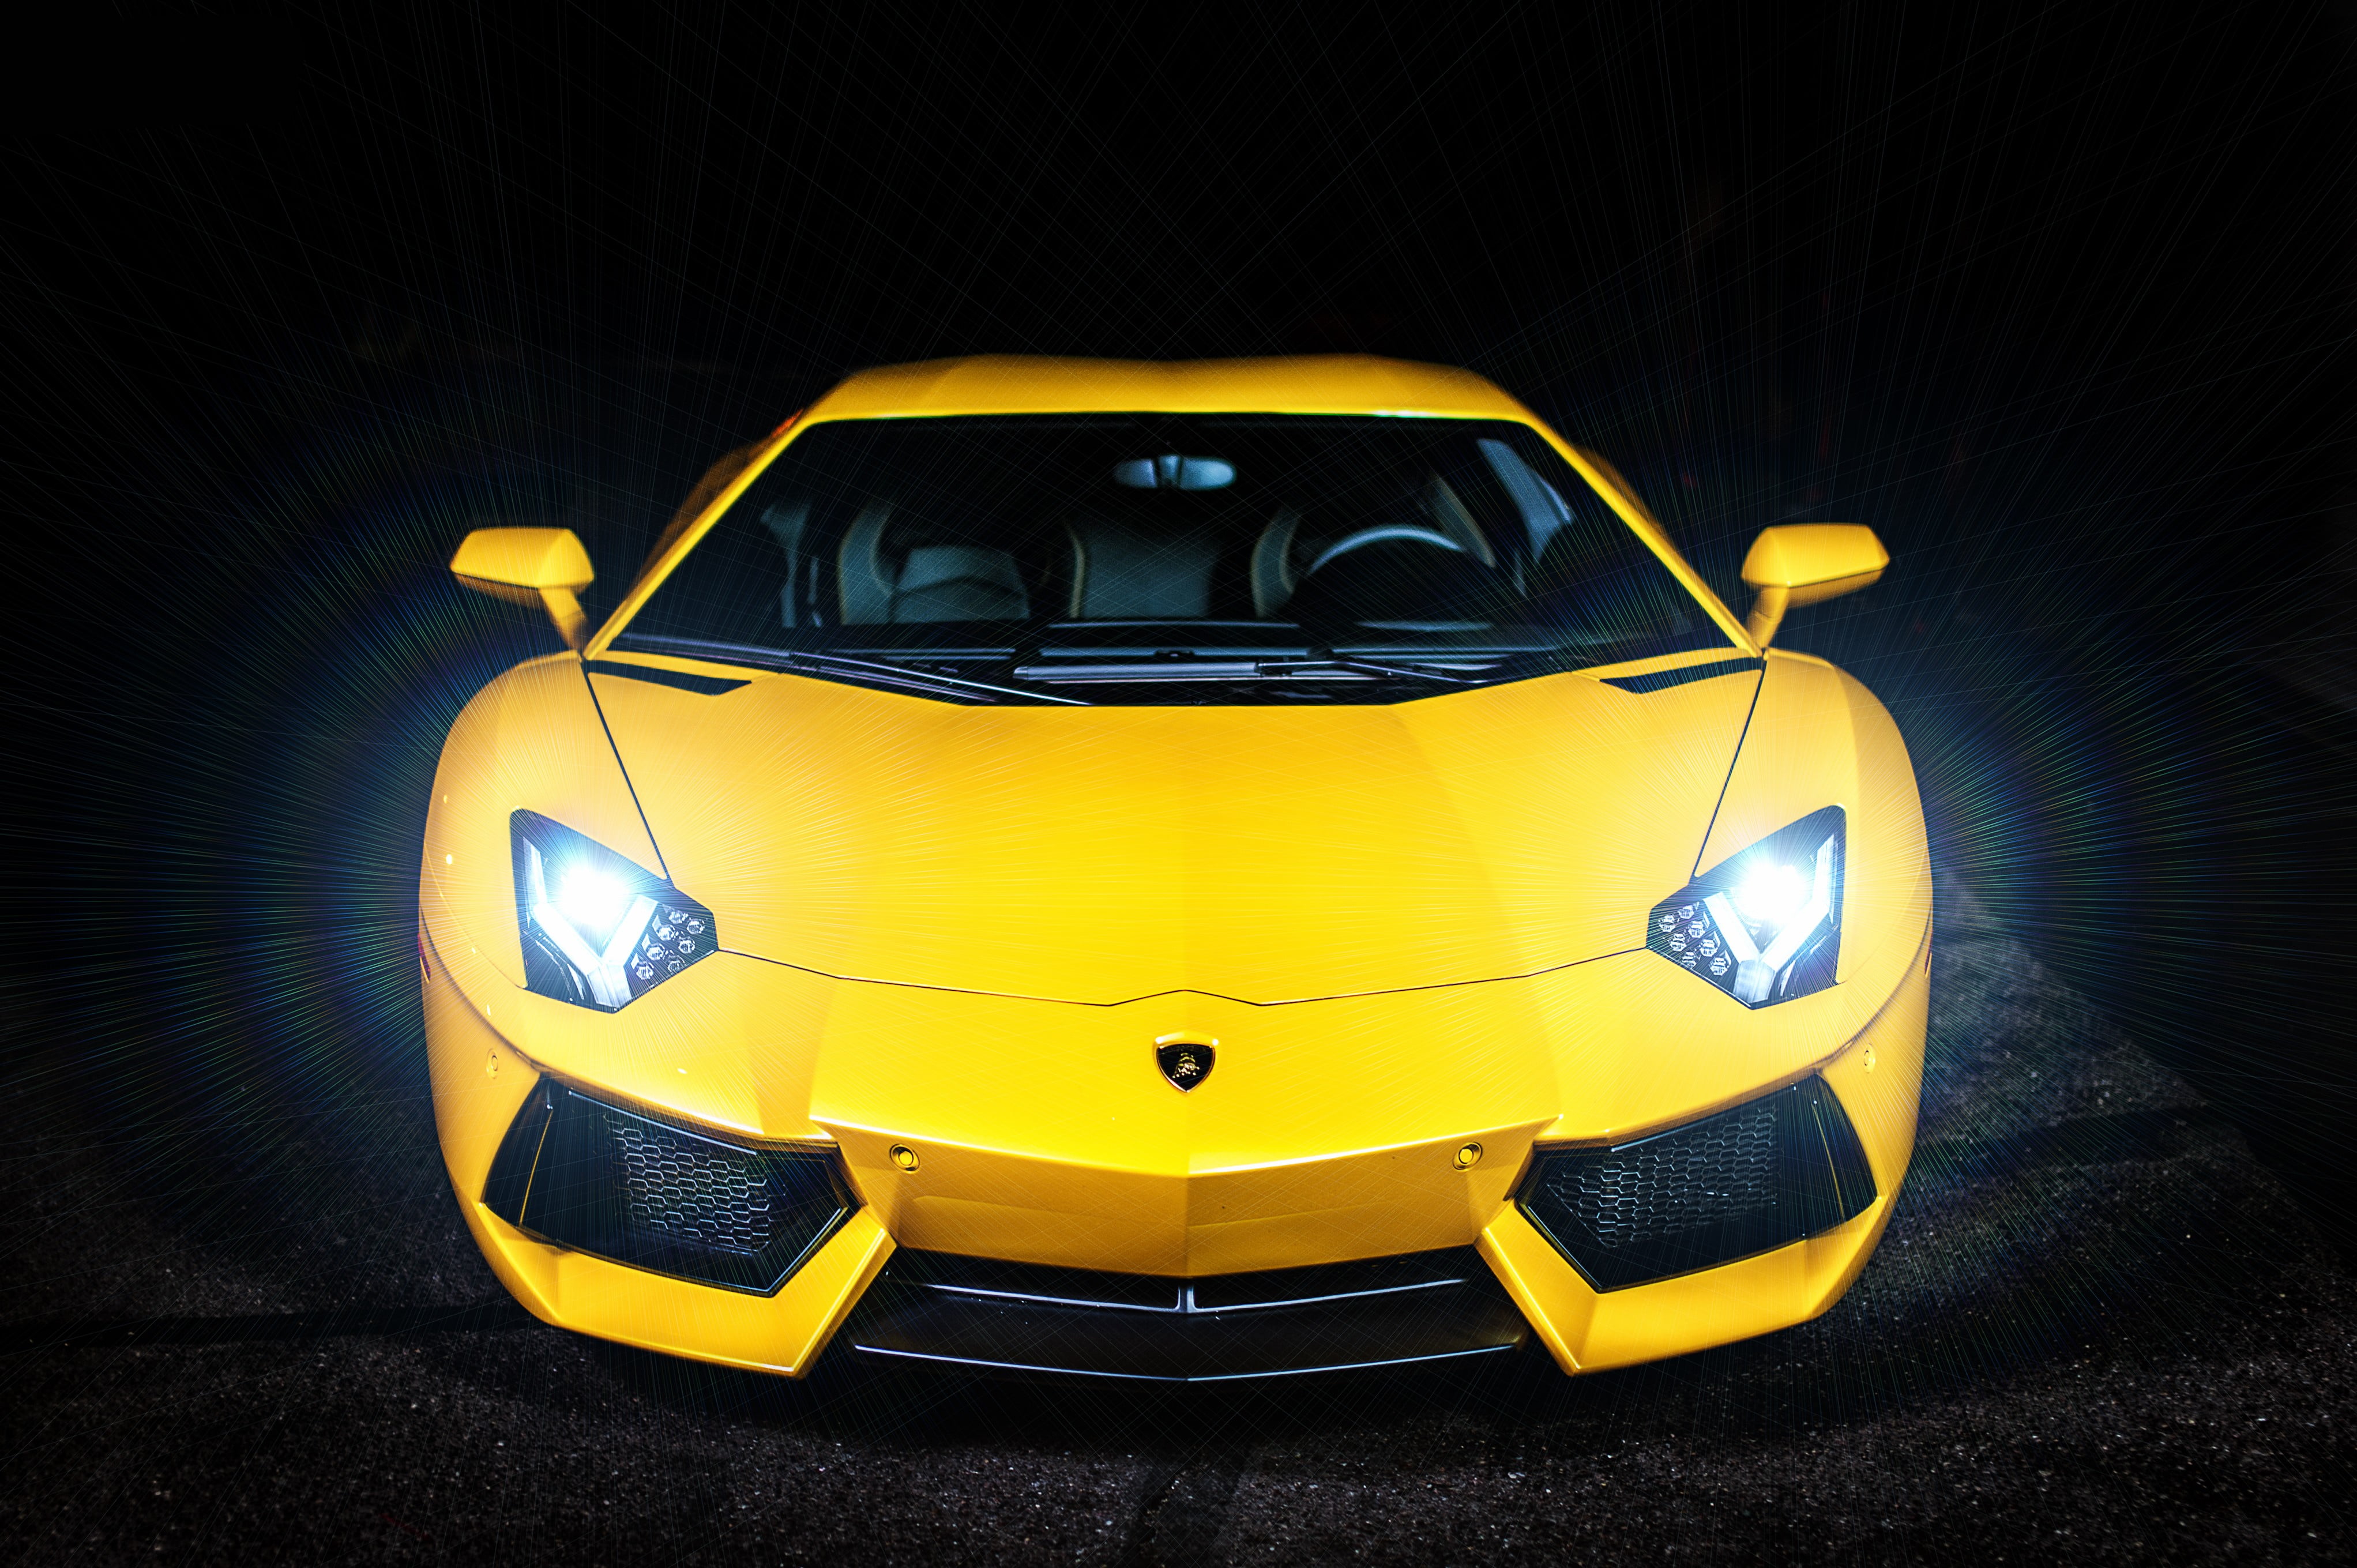 yellow Lamborgini sports car, car, Lamborghini, yellow cars, vehicle